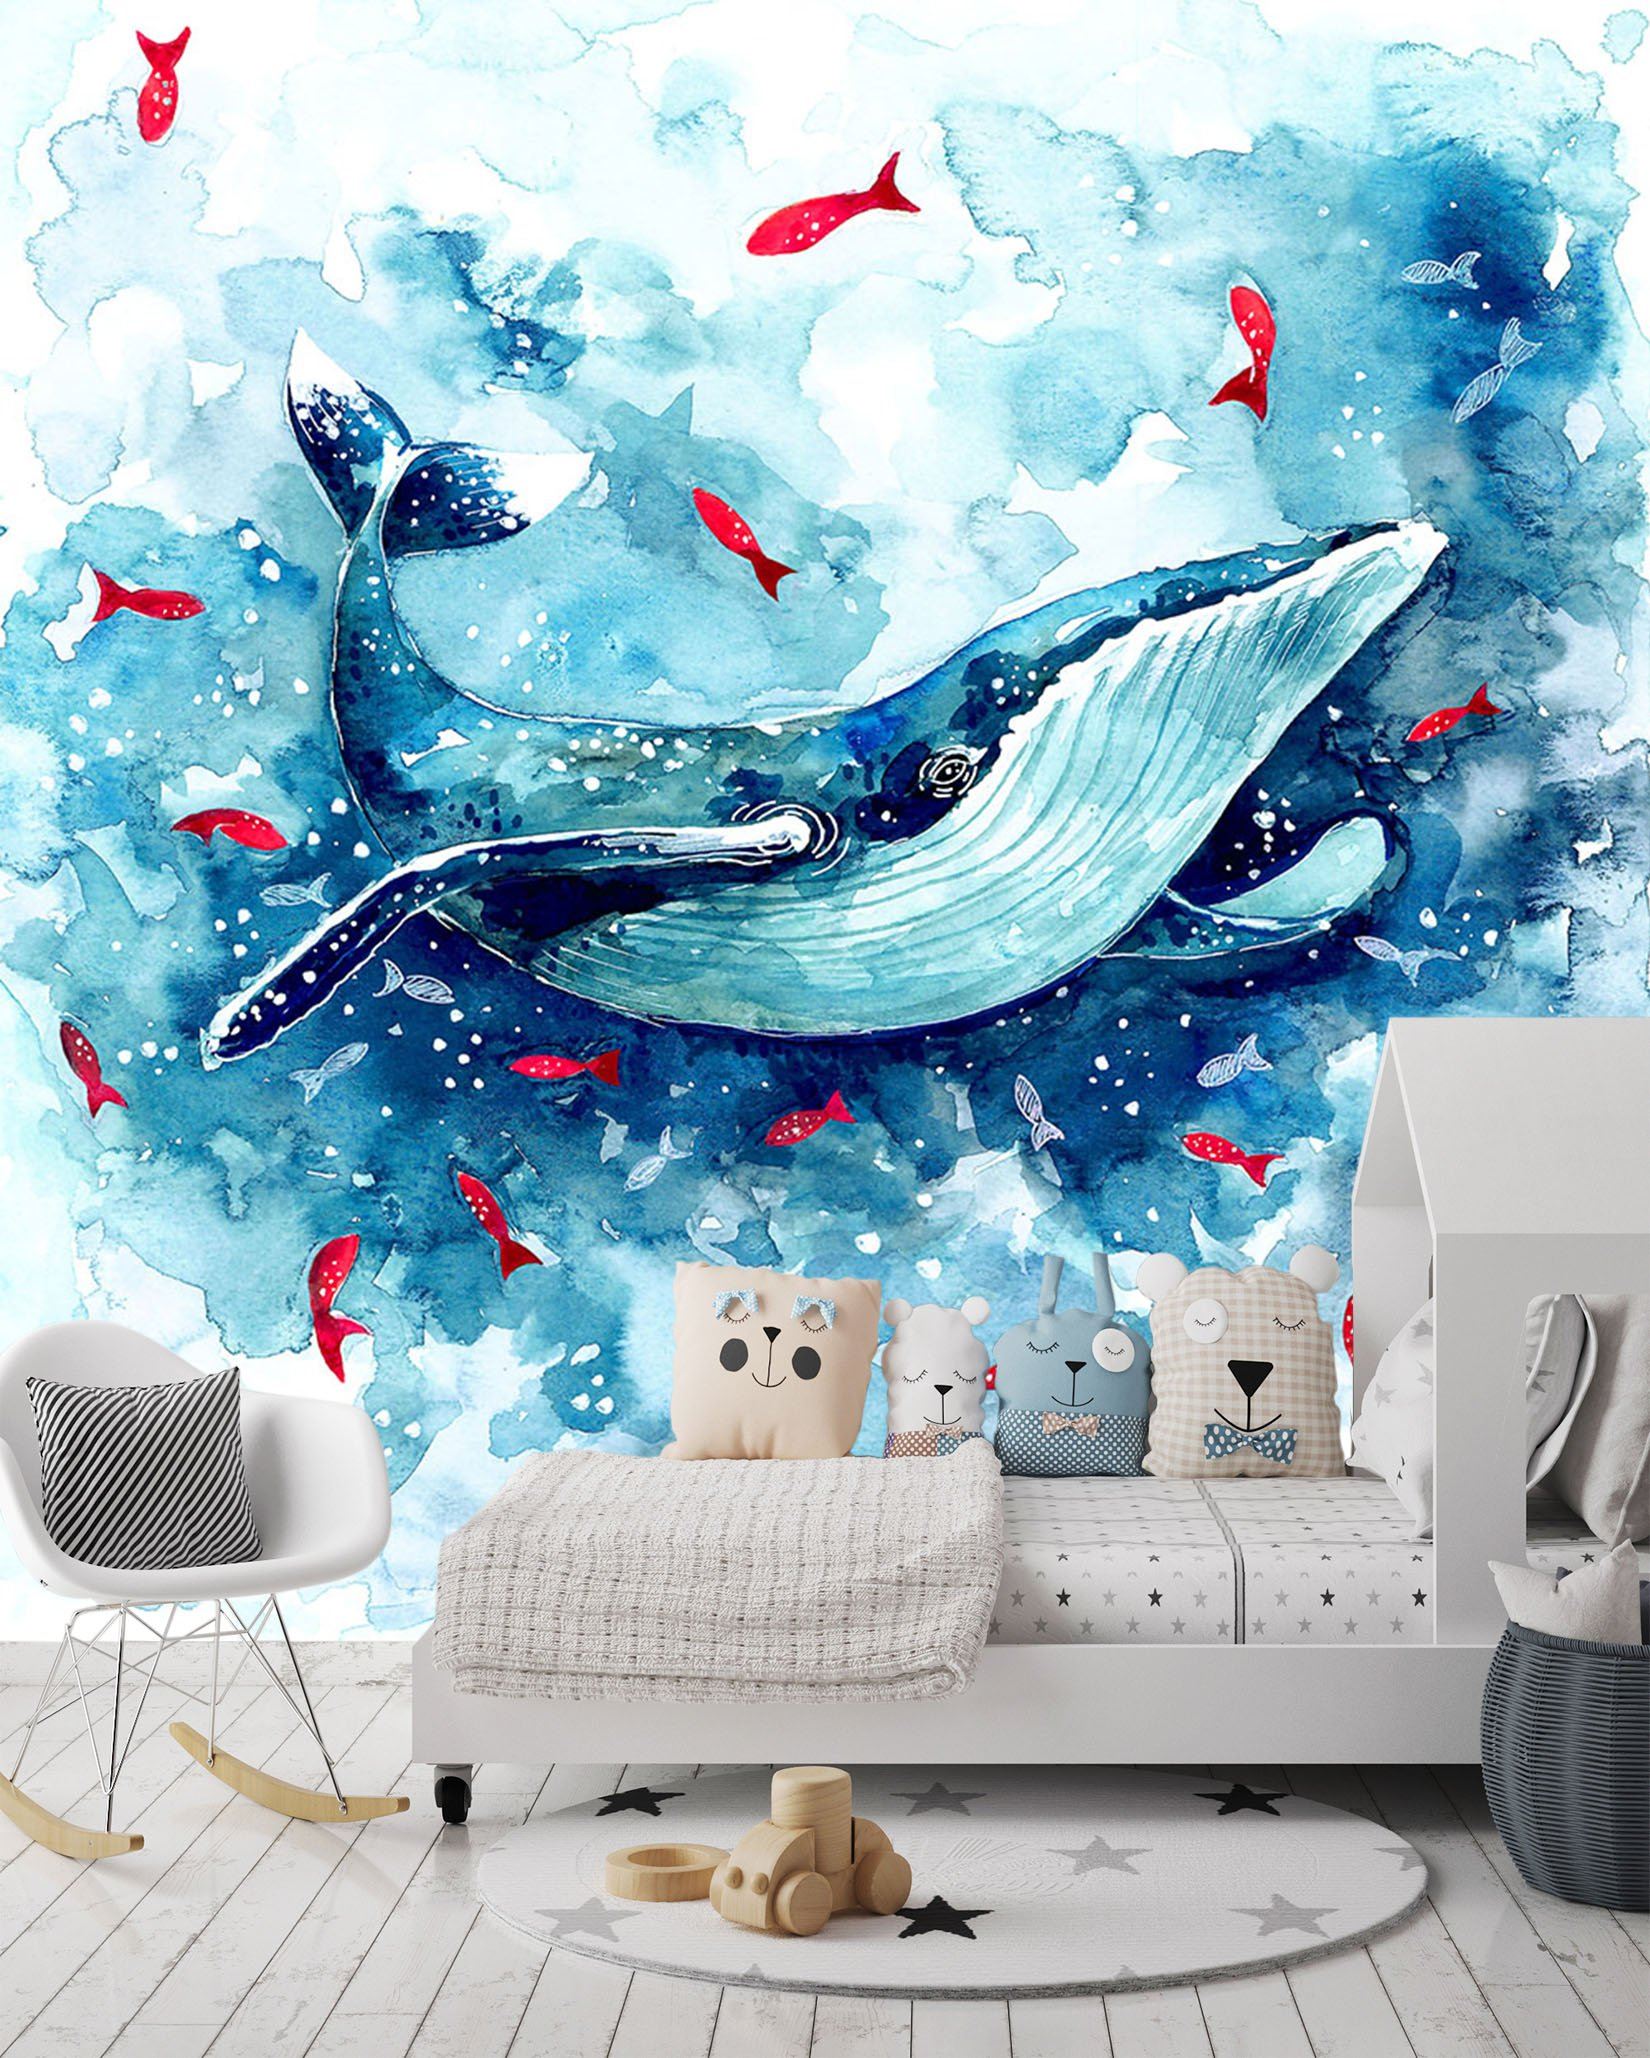 3D Whale Red Fish 643 Wallpaper AJ Wallpaper 2 